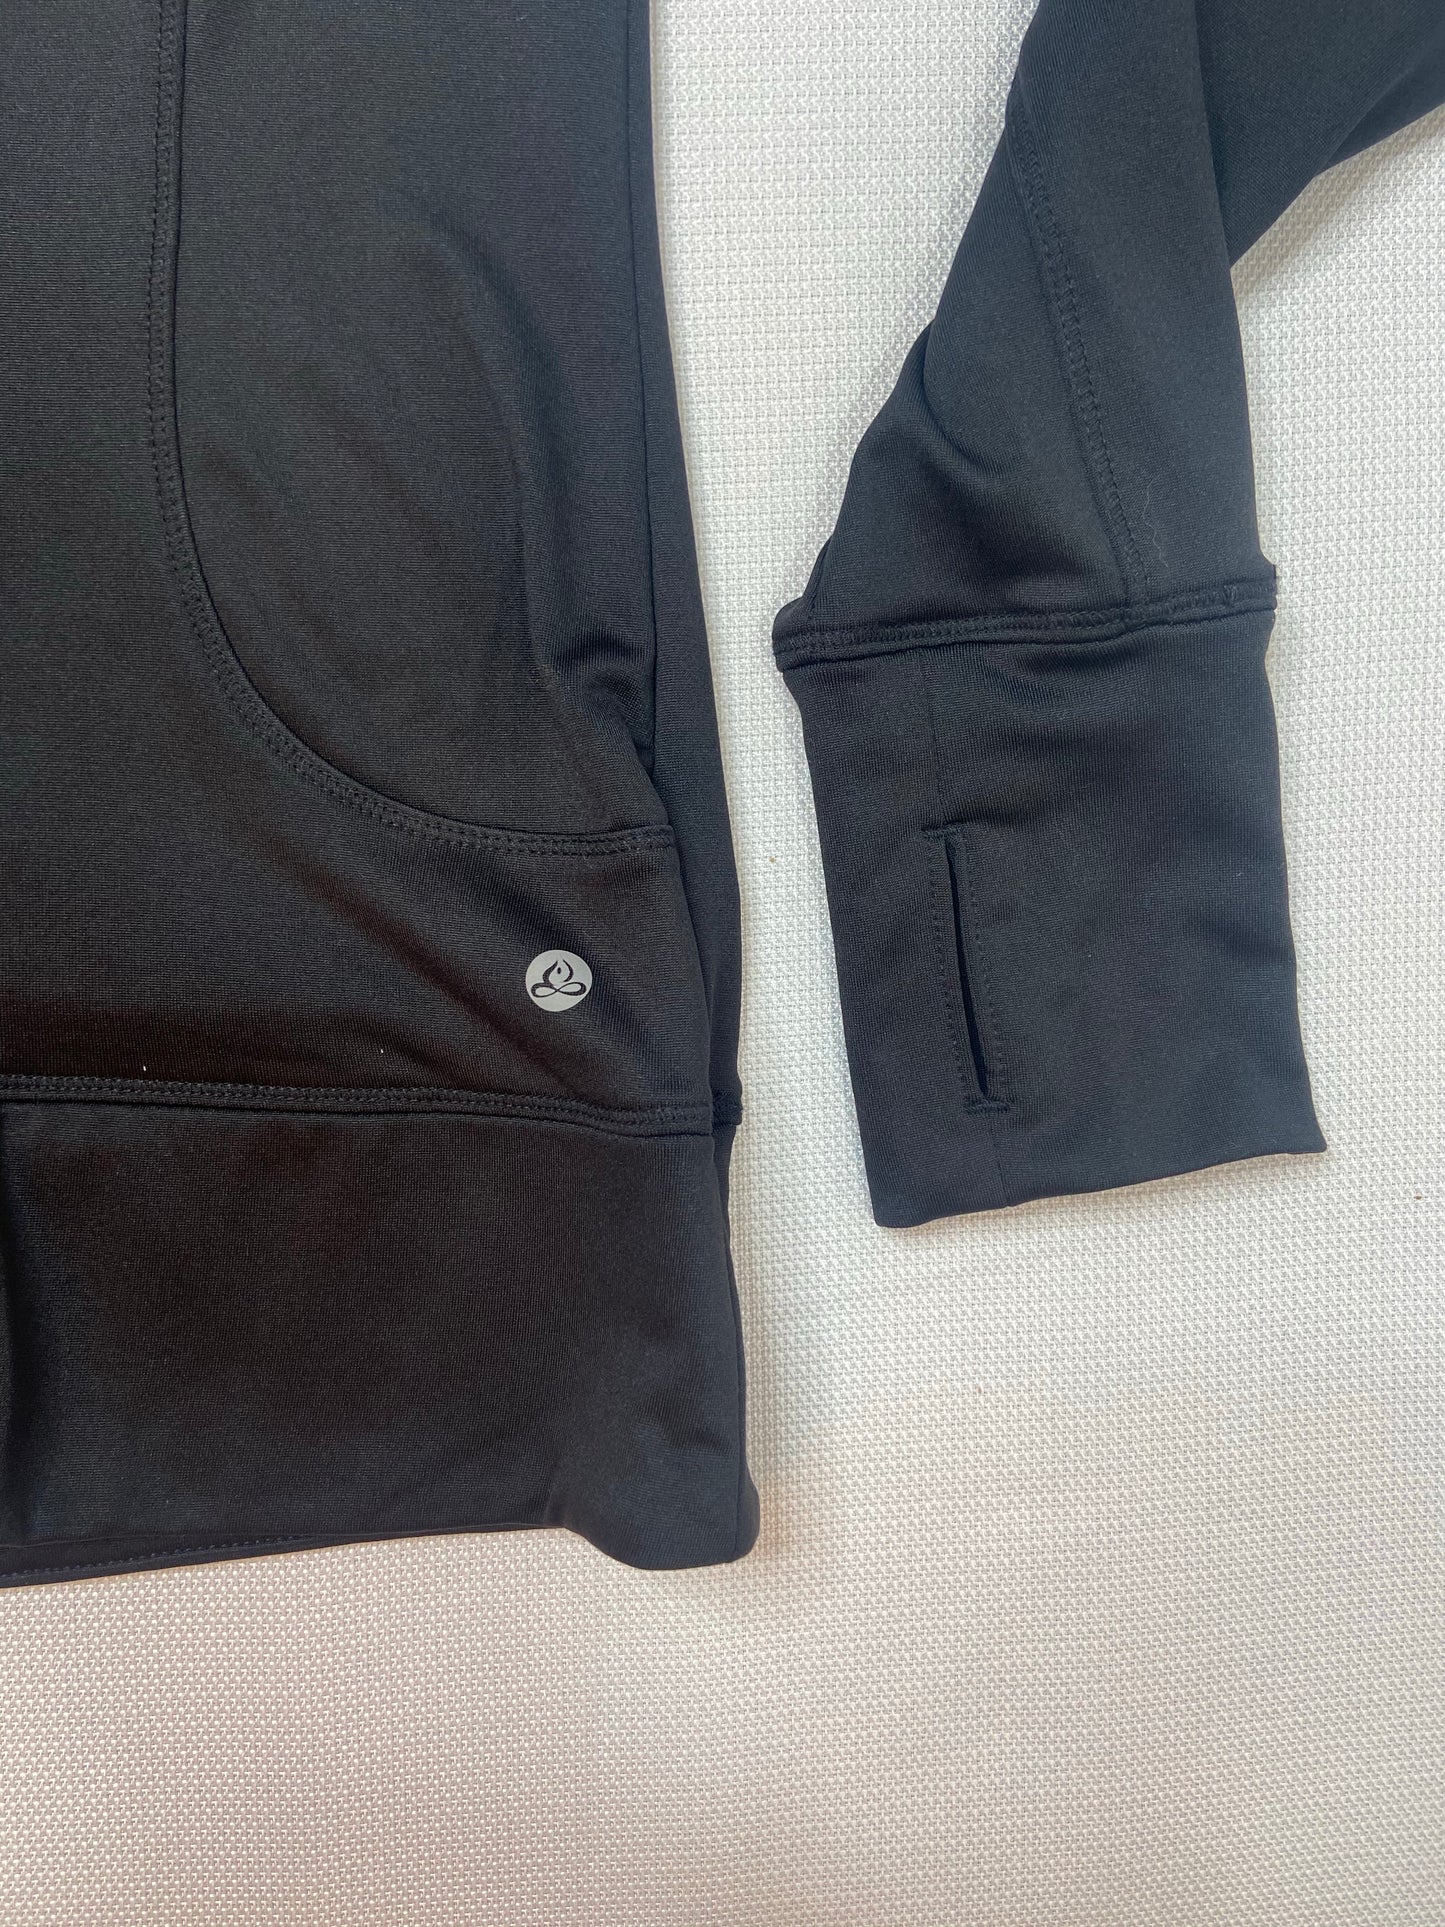 Black Fleece Line Half Zip Pullover- S